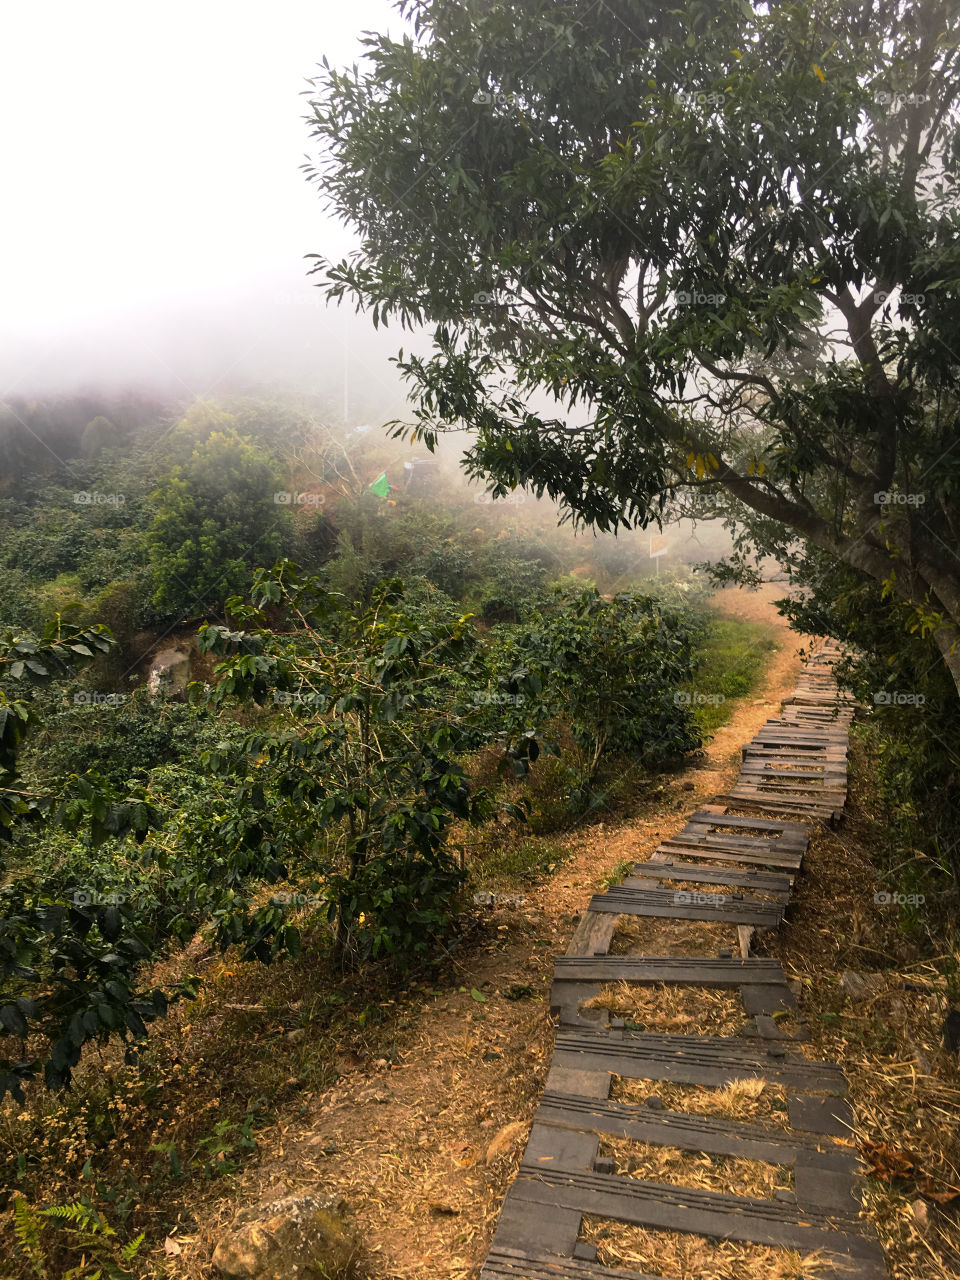 A mountain trail through tea farms in Taiwan 